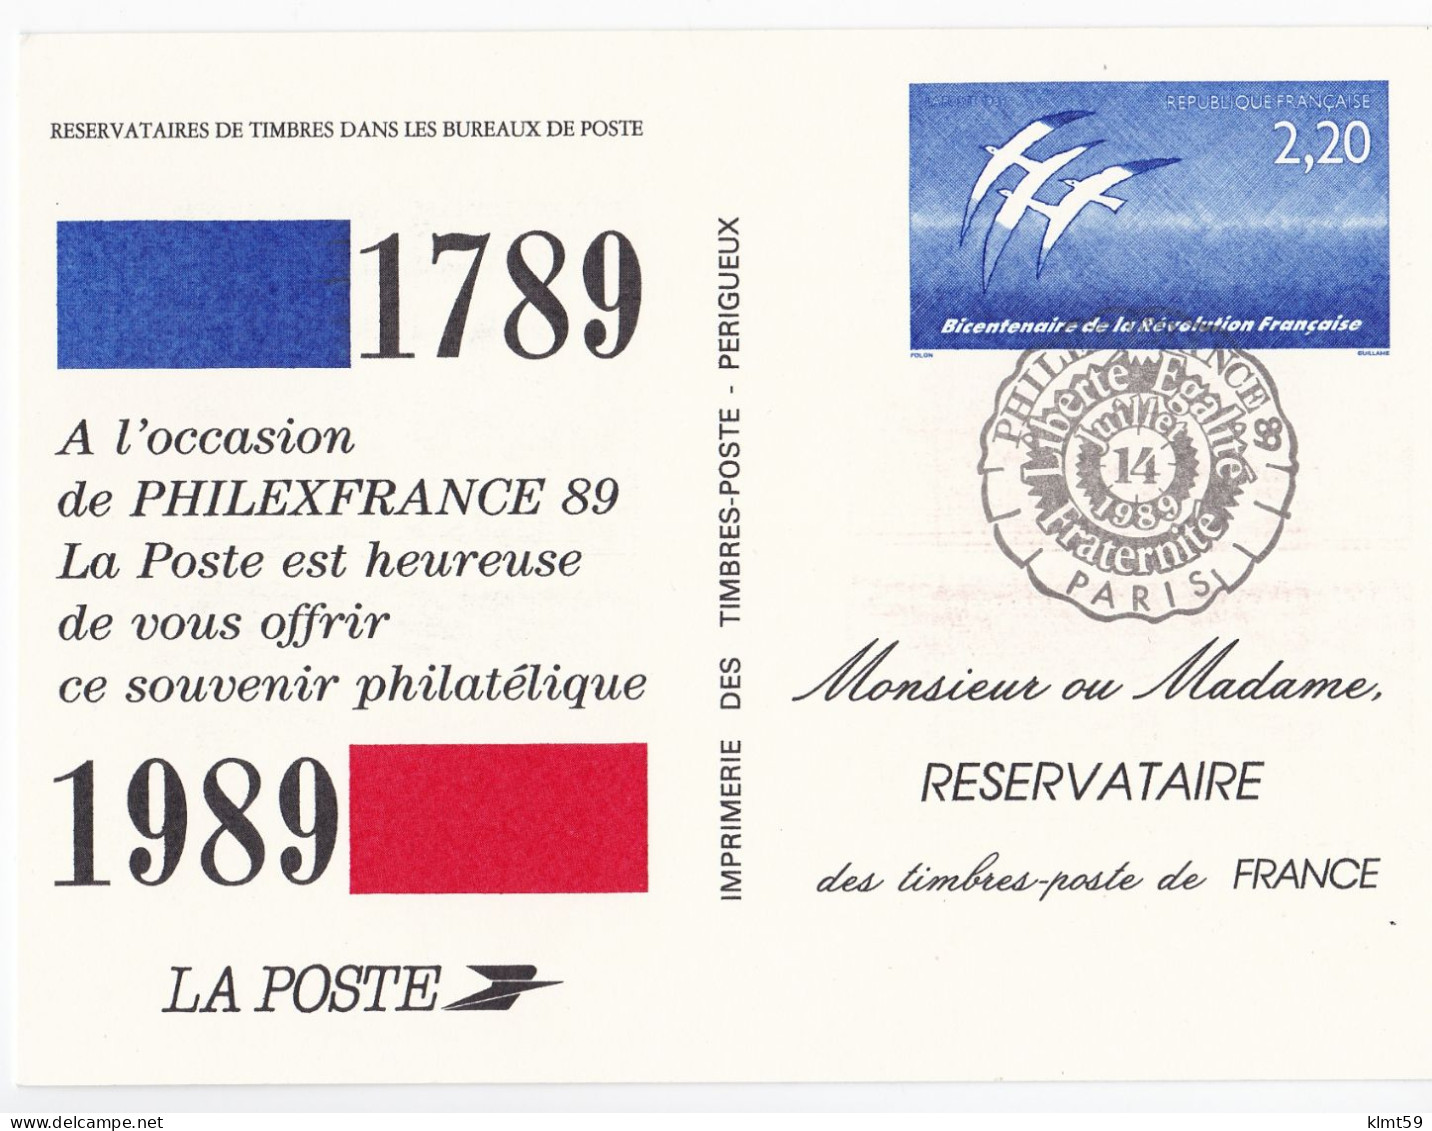 Carte Souvenir Philatélique Du Timbre Bicentenaire De La Révolution Française La Poste 1989 - Documents De La Poste